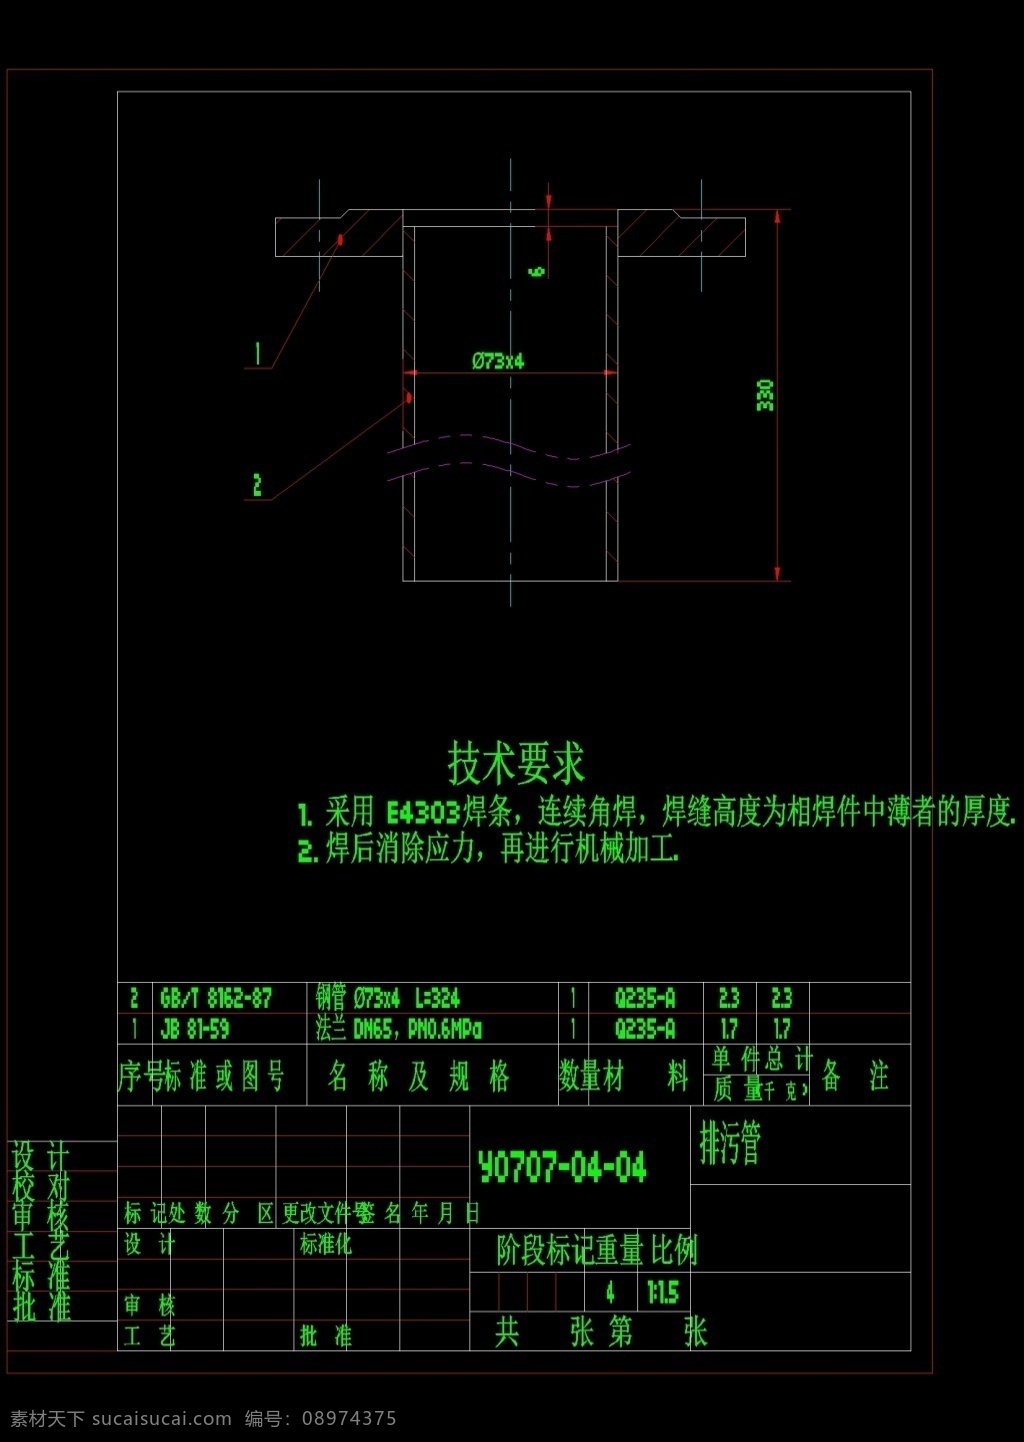 离子 交换器 全 图 展示 cad 机械 图纸 机械图纸素材 机械模具 机械设计素材 图纸素材 dwg 黑色